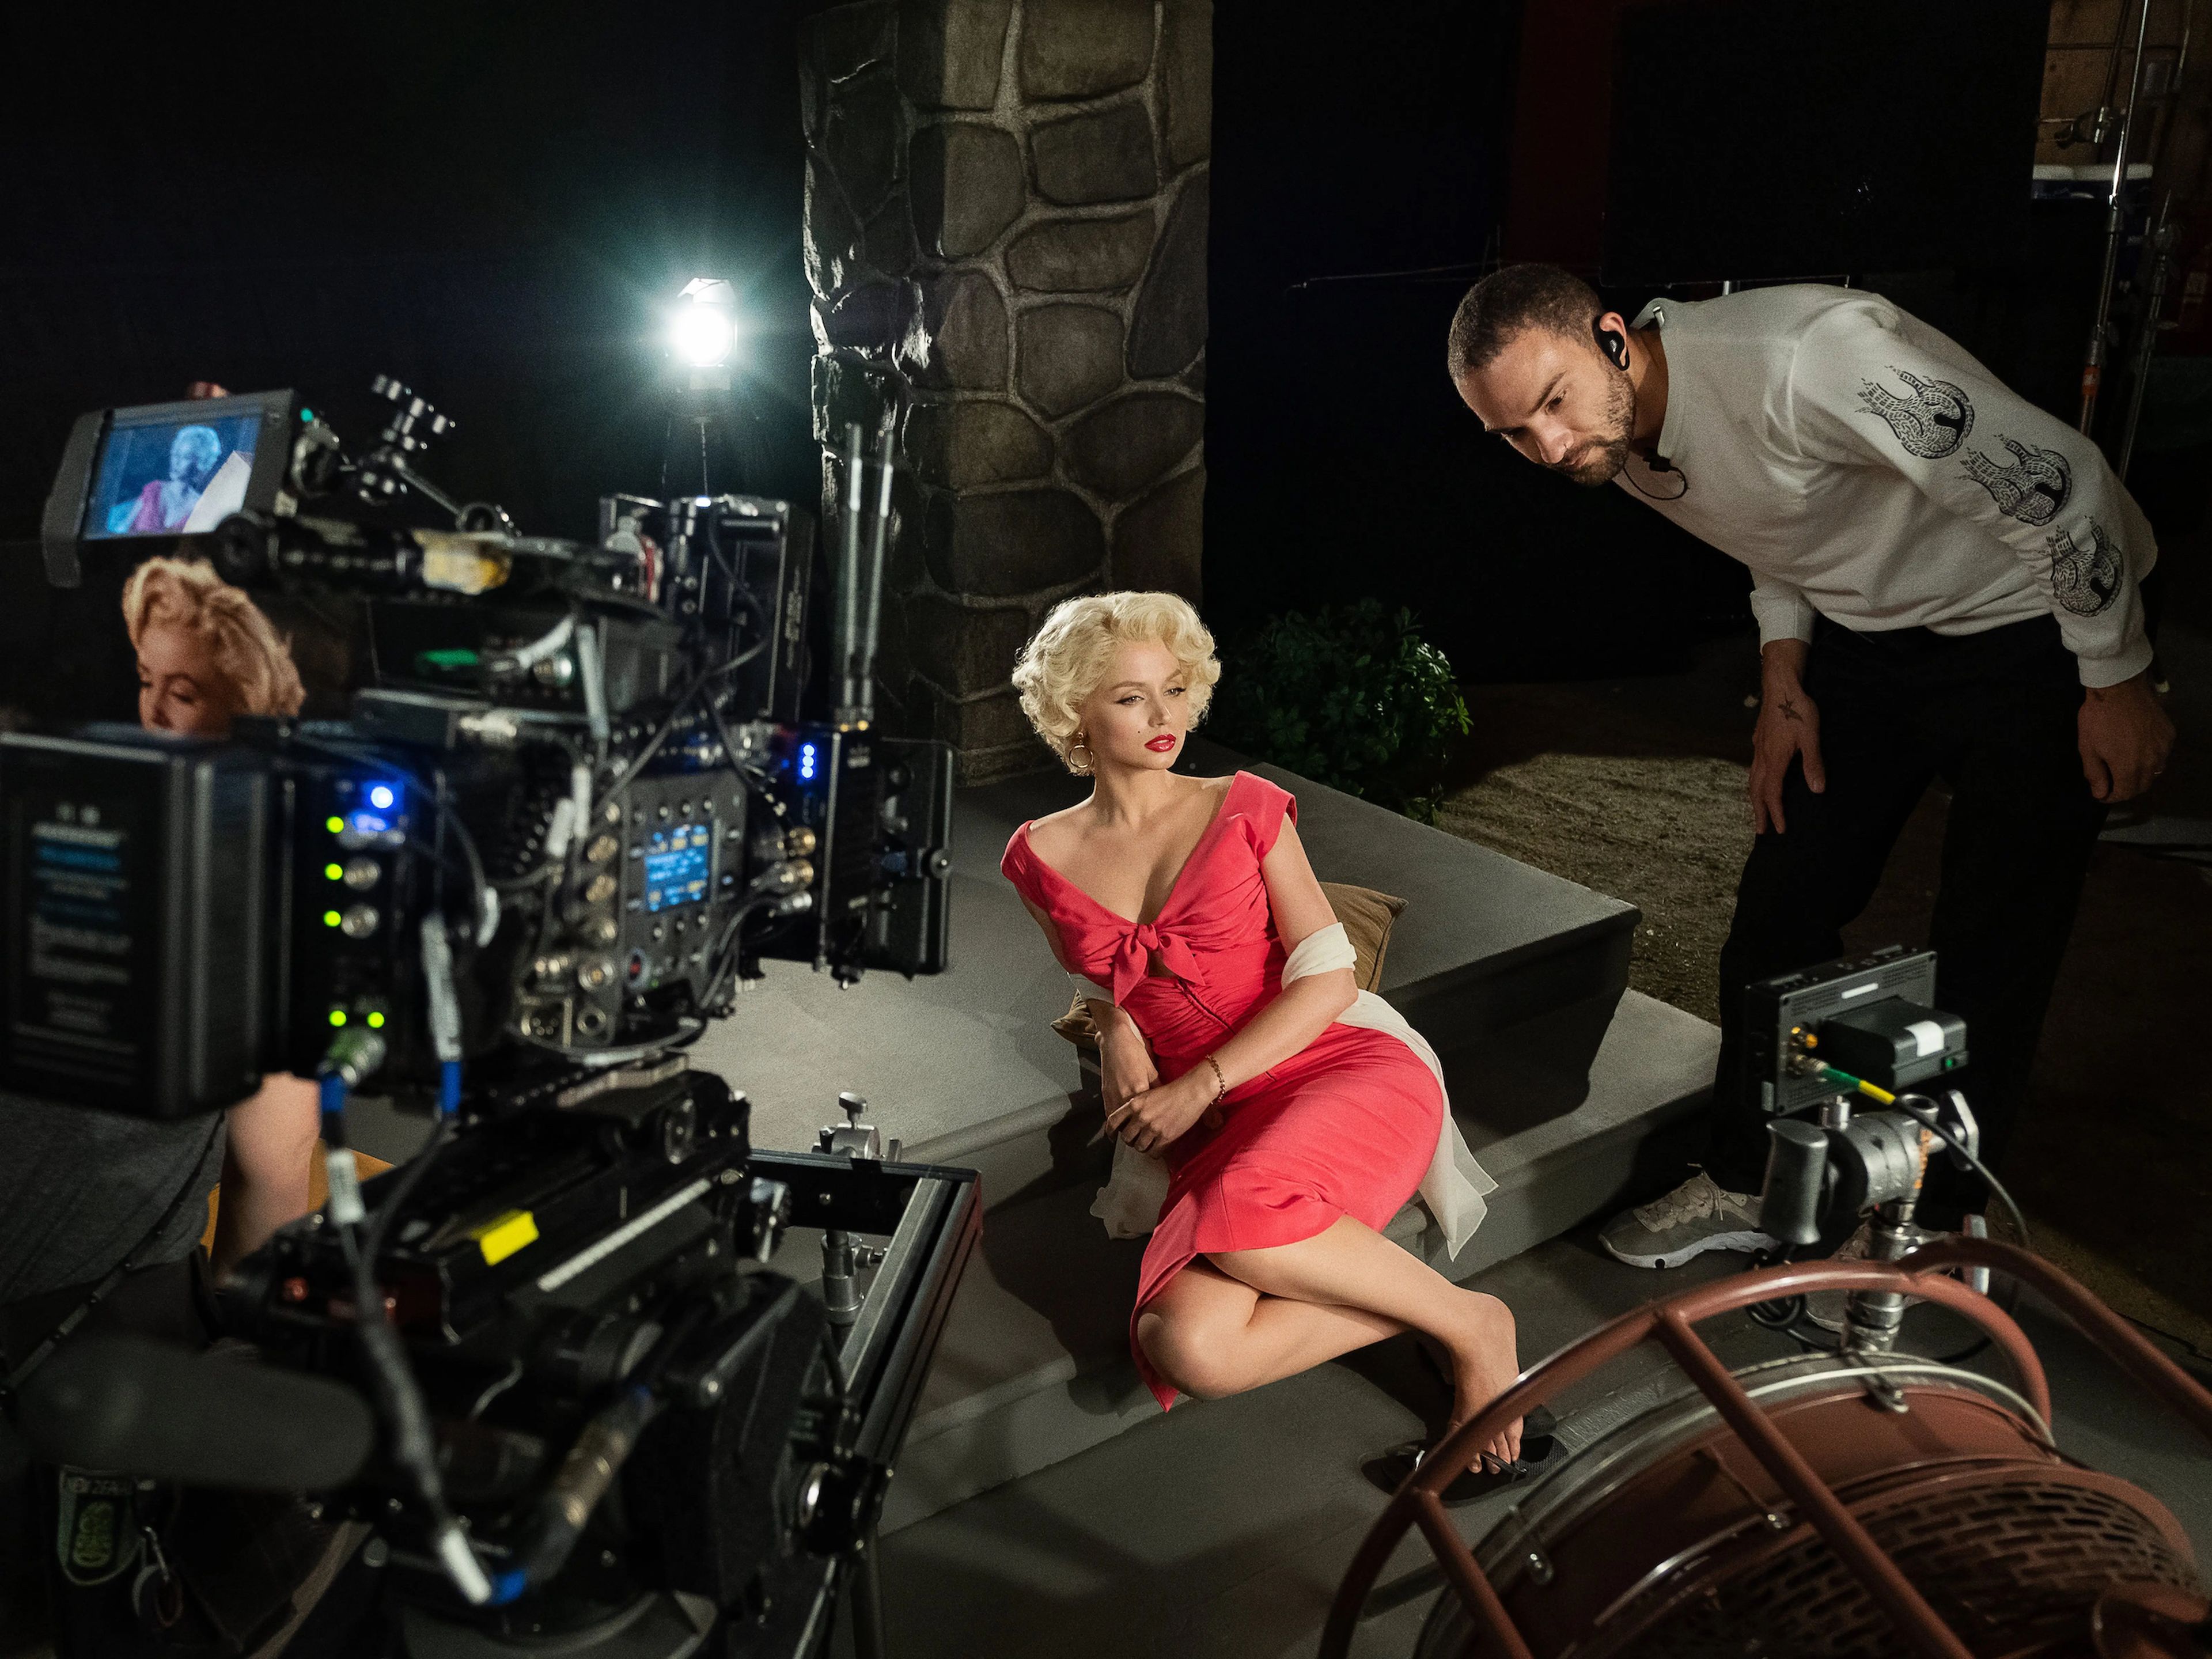 Ana de Armas como Marilyn Monroe.